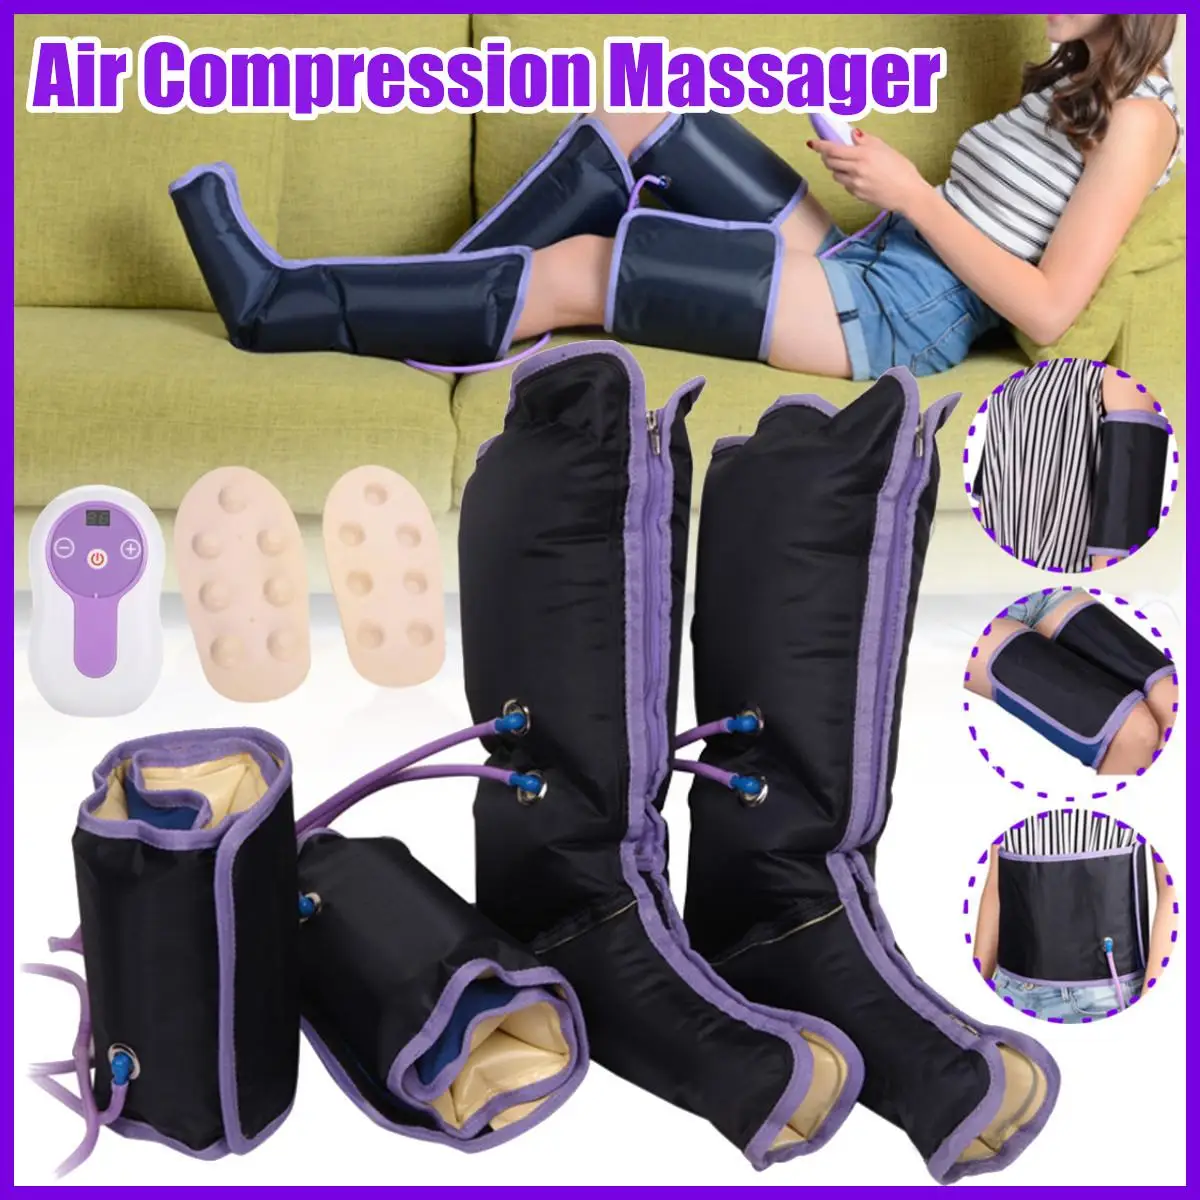 Электрический воздушный компрессионный массажер для ног обертывания ног для стоп, лодыжек до середины икры половый массажер способствует хорошему кровообращению снимают усталость